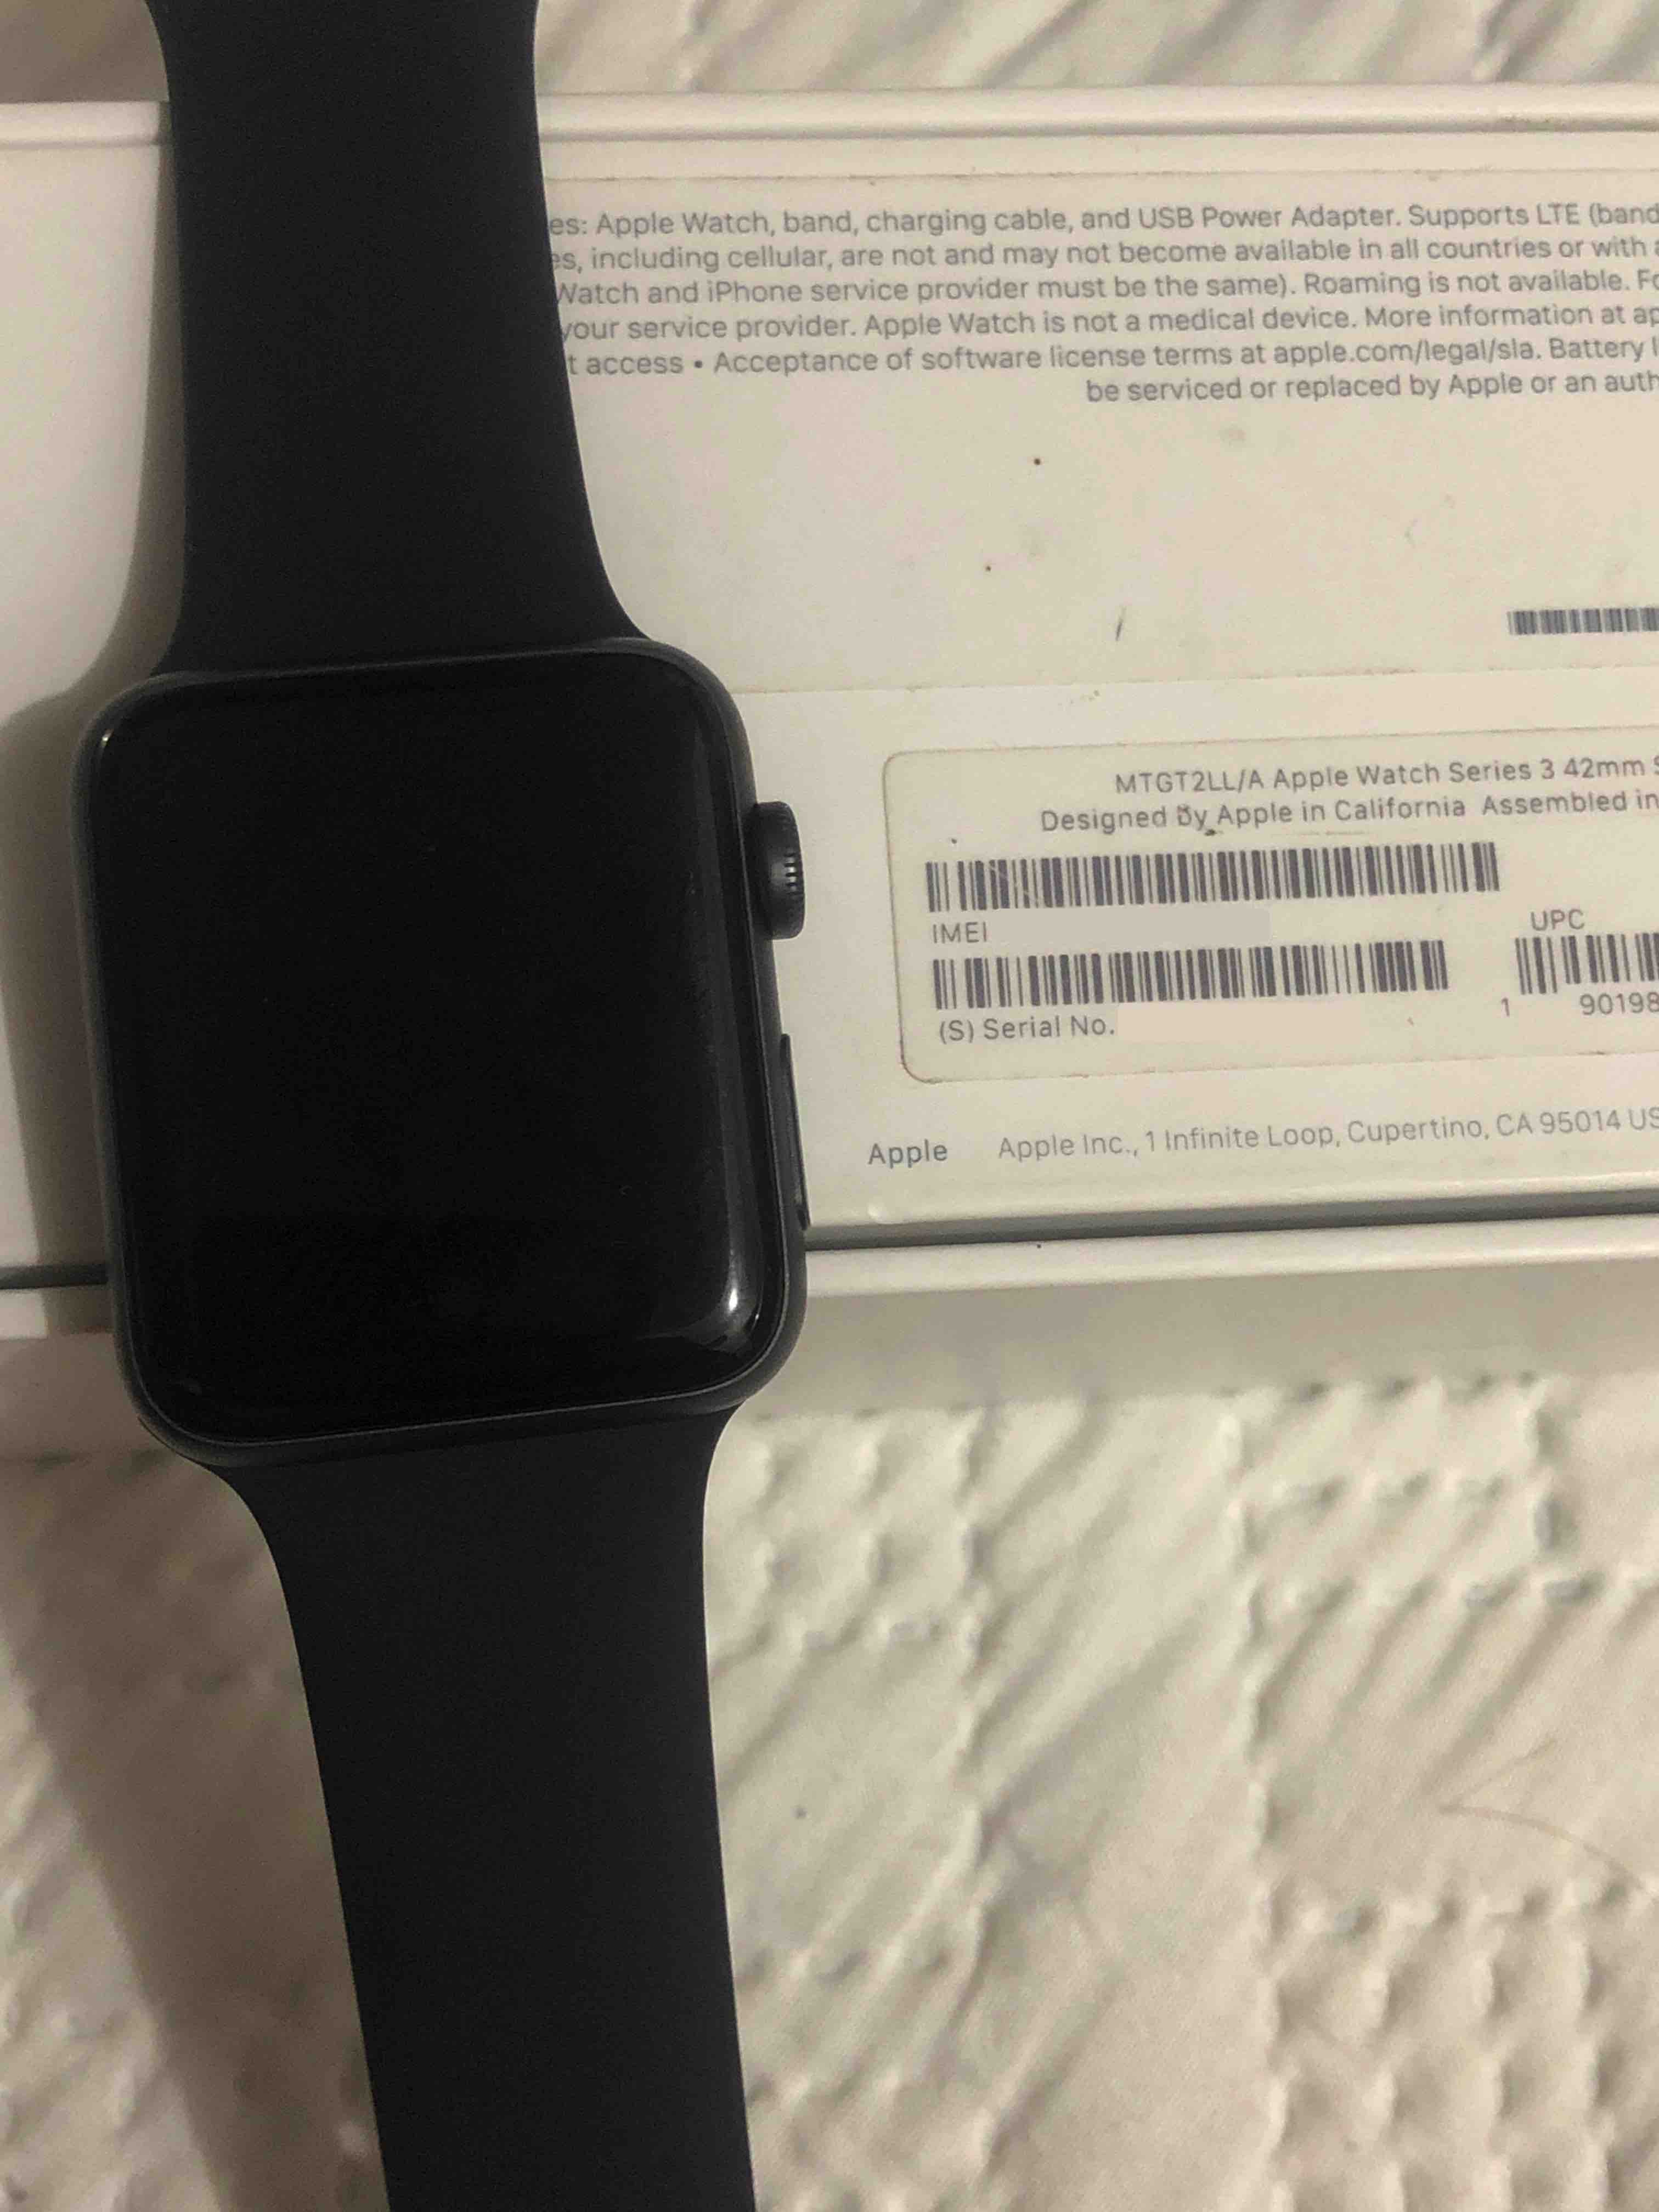 Tengo un Apple Watch de segunda mano l… - Comunidad de Apple